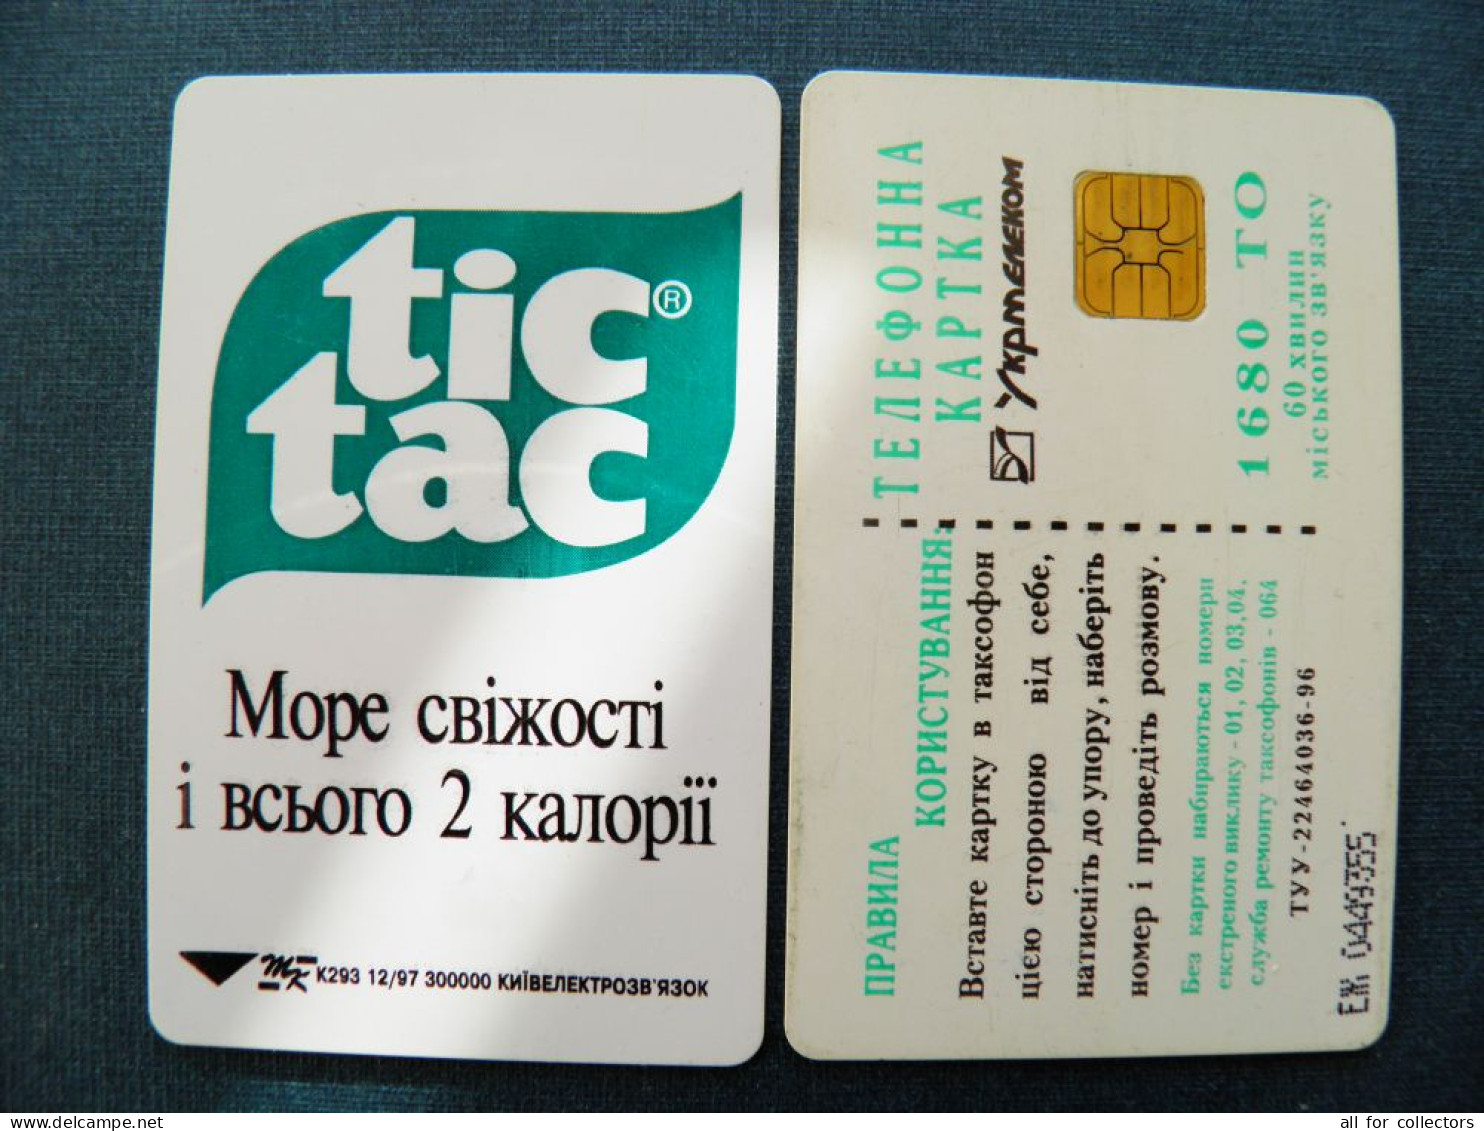 Phonecard Chip Advertising Tic Tac K293 12/97 300,000ex. 1680 Units Prefix Nr. EZh UKRAINE - Ukraine